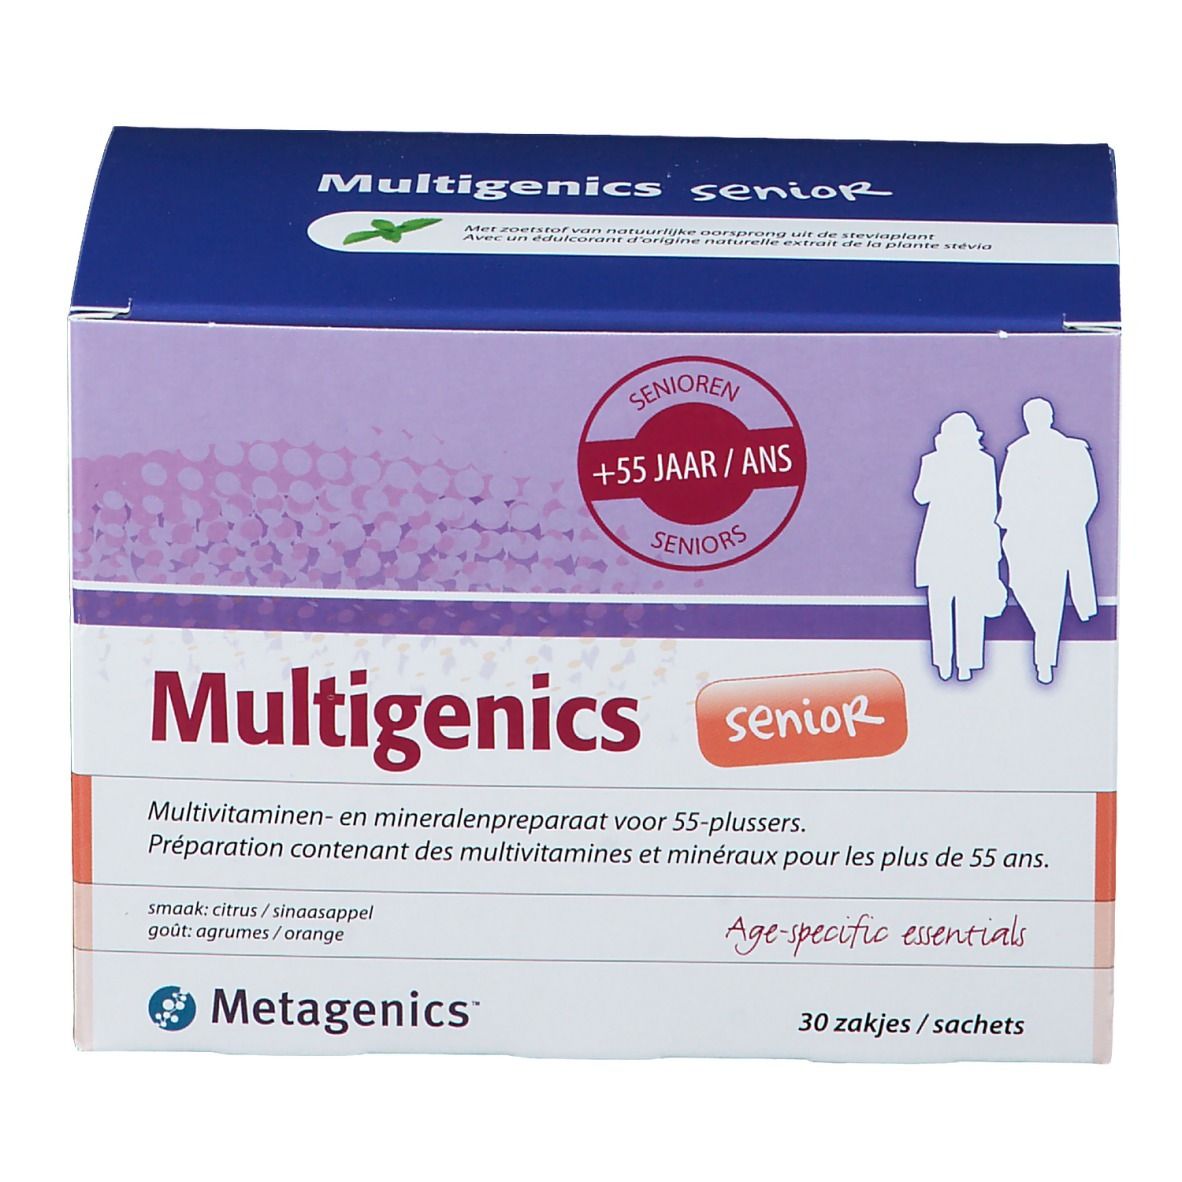 Metagenics Multigenics Senior